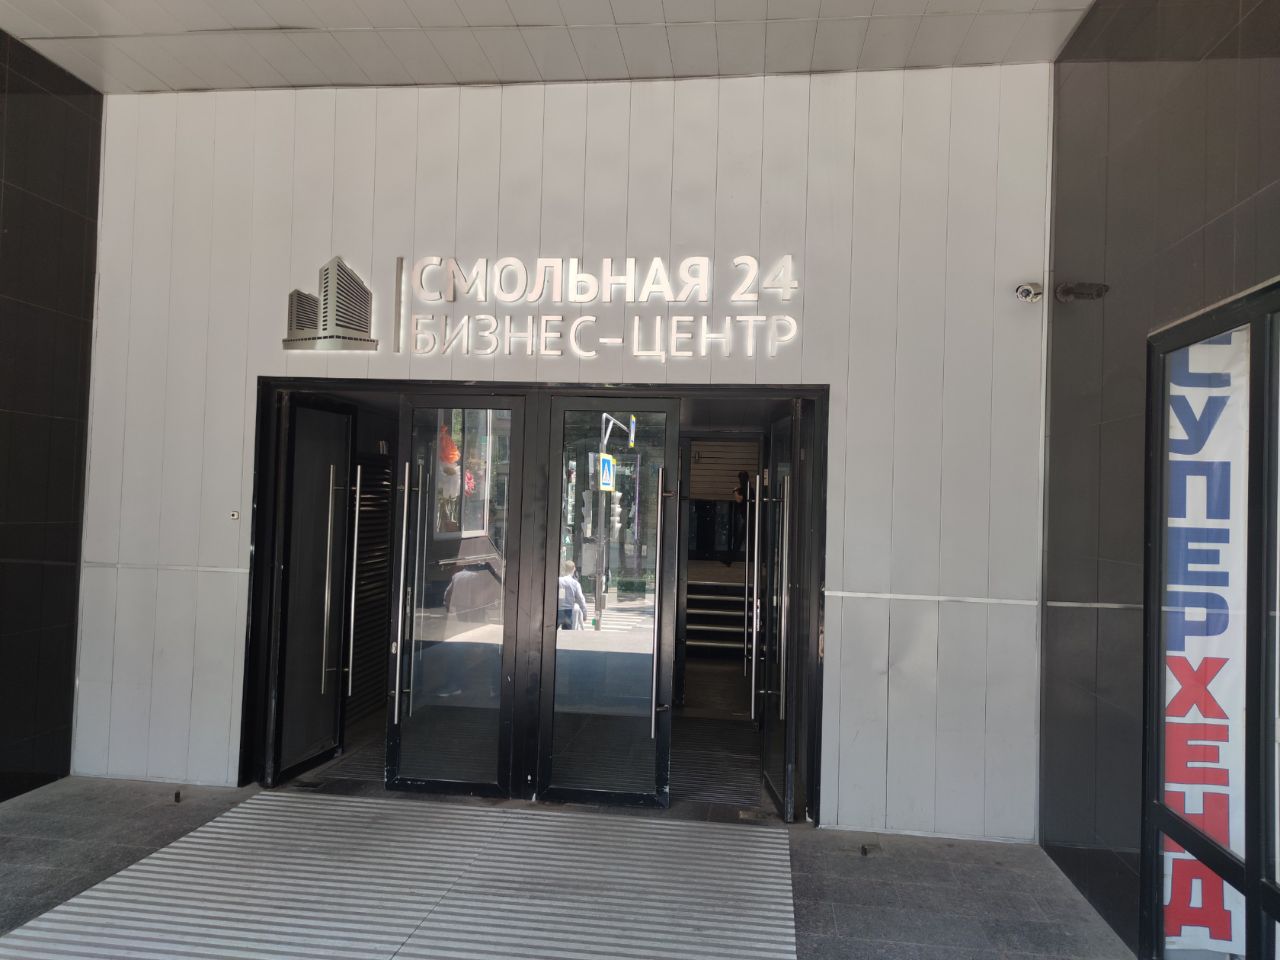 Бизнес Центр Смольная 24 (Smolnaya 24)